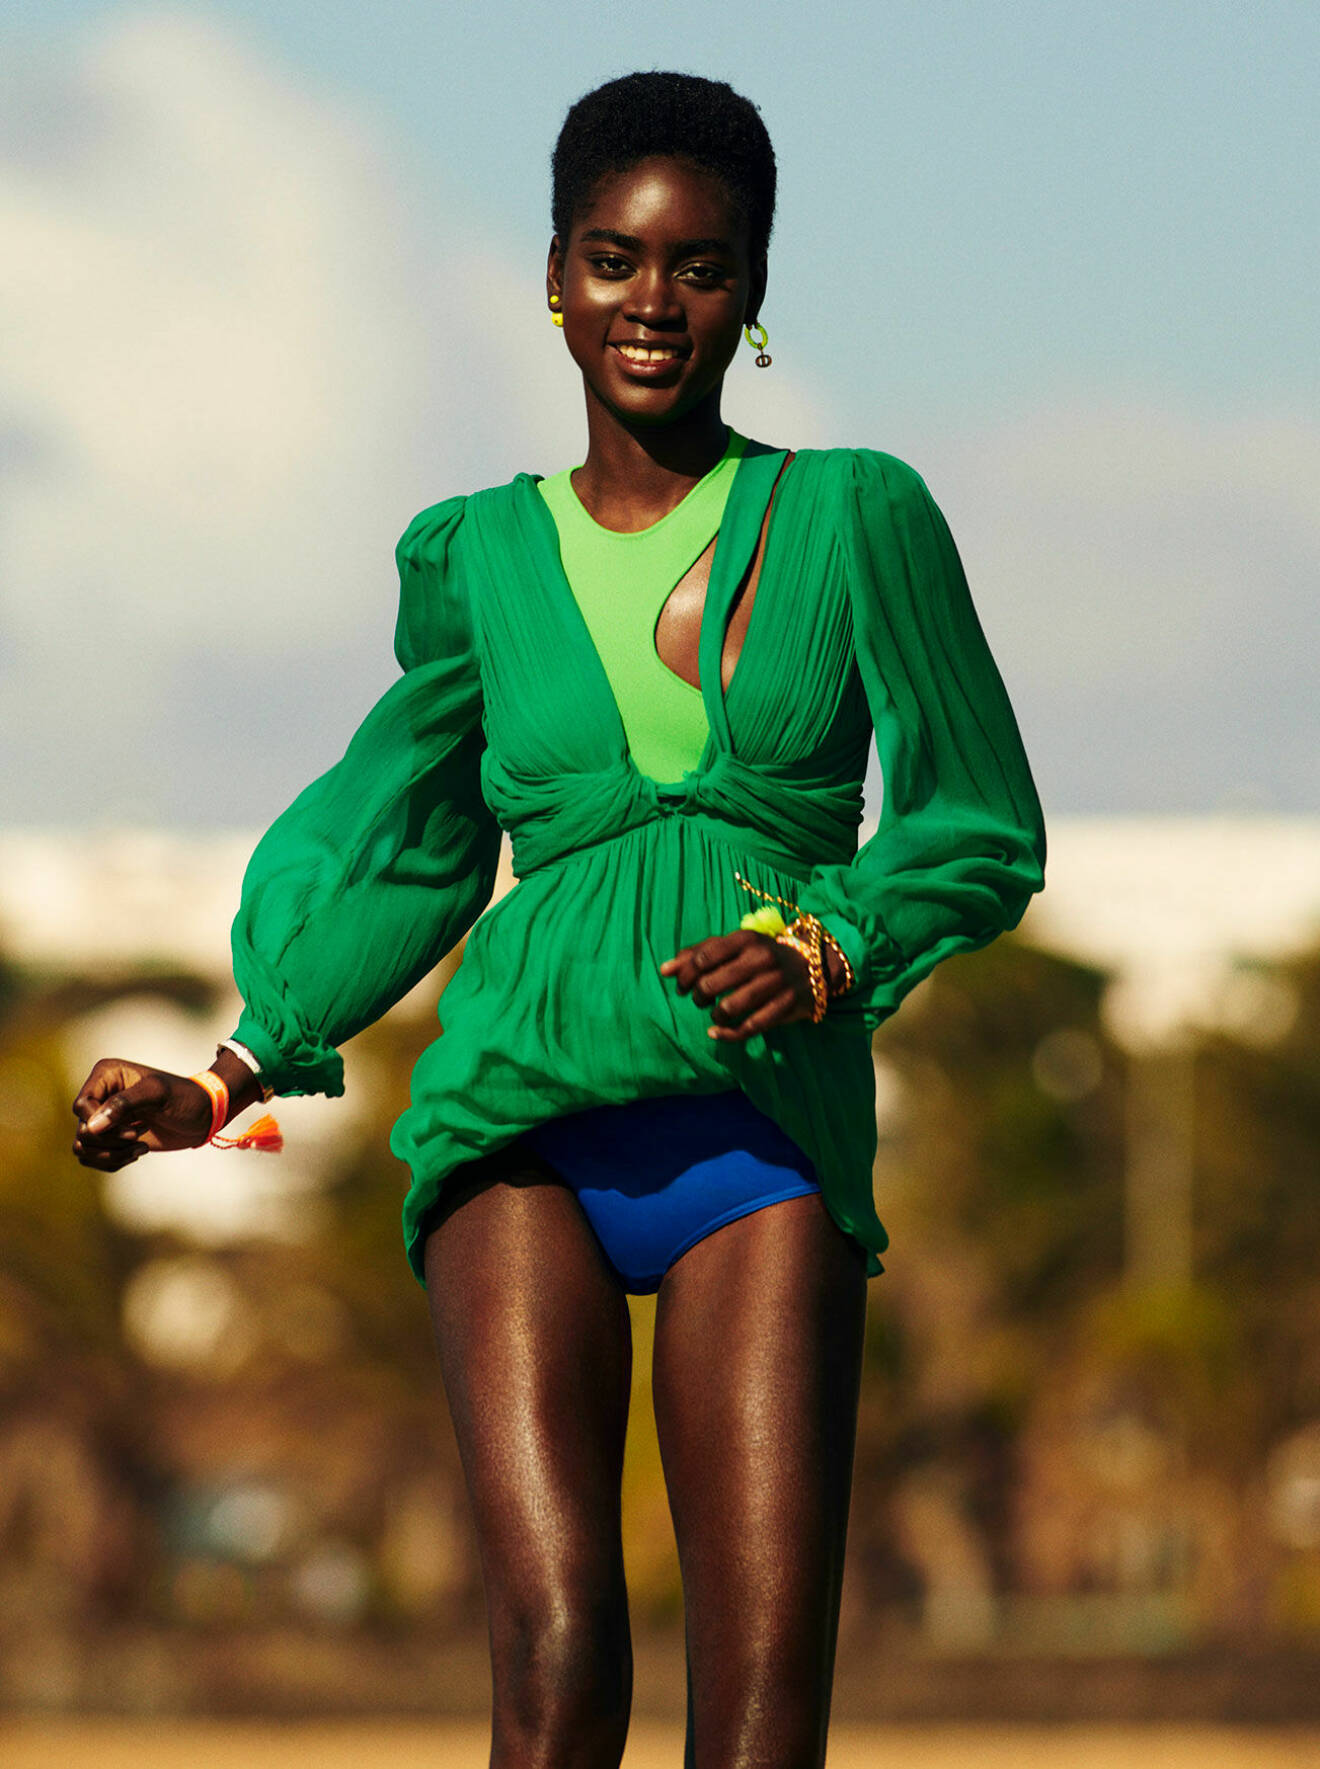 Modellen har på sig en mörkgrön klänning med en ljusgrön topp under och blåa bikinitrosor